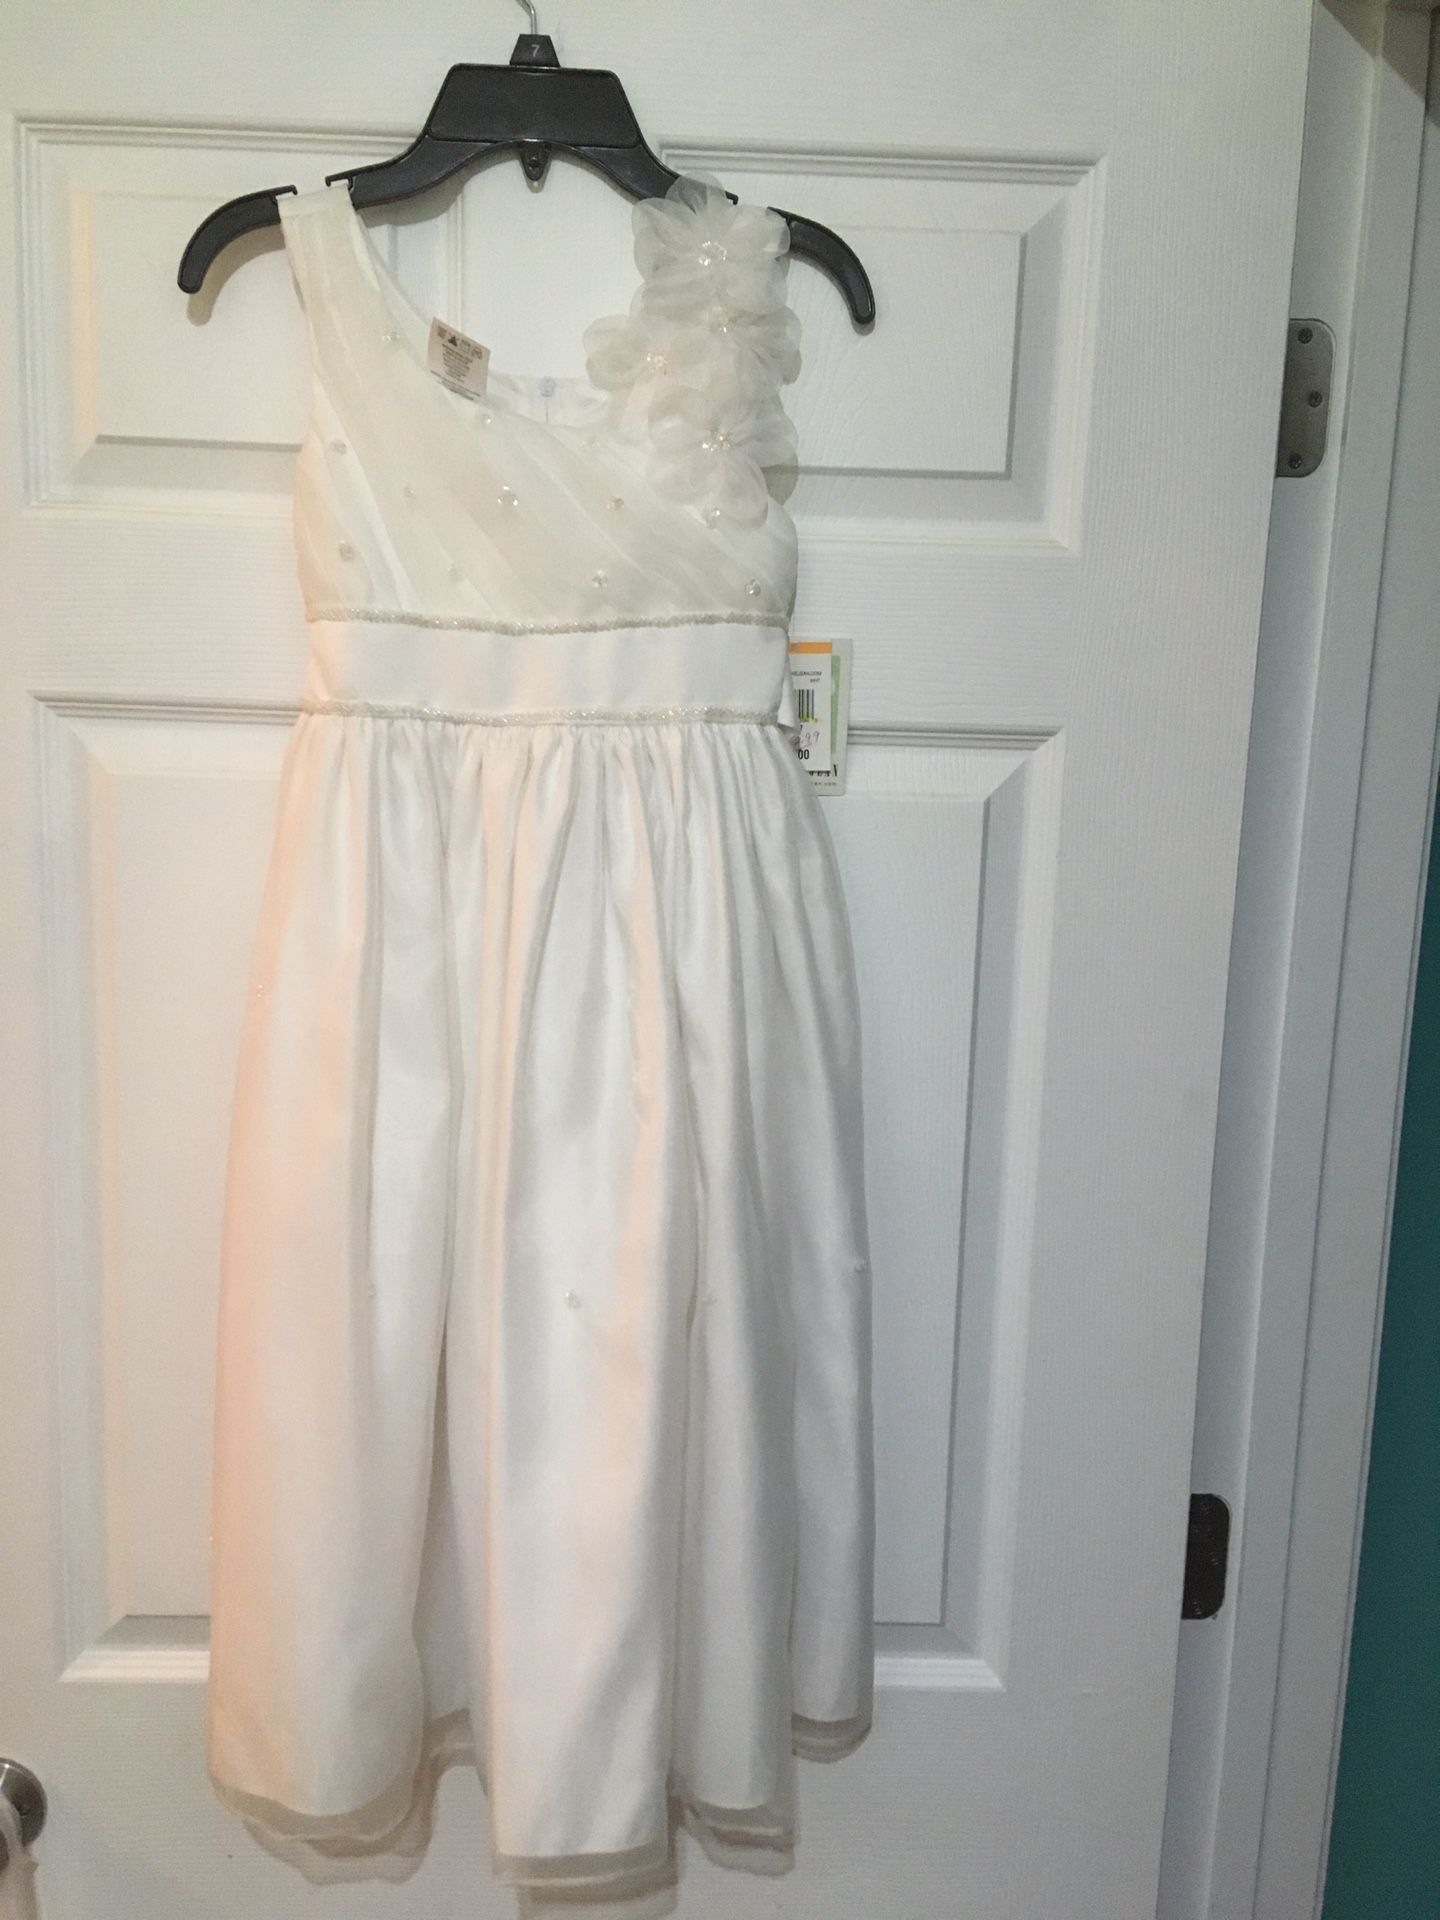 White communion or flower girl dress